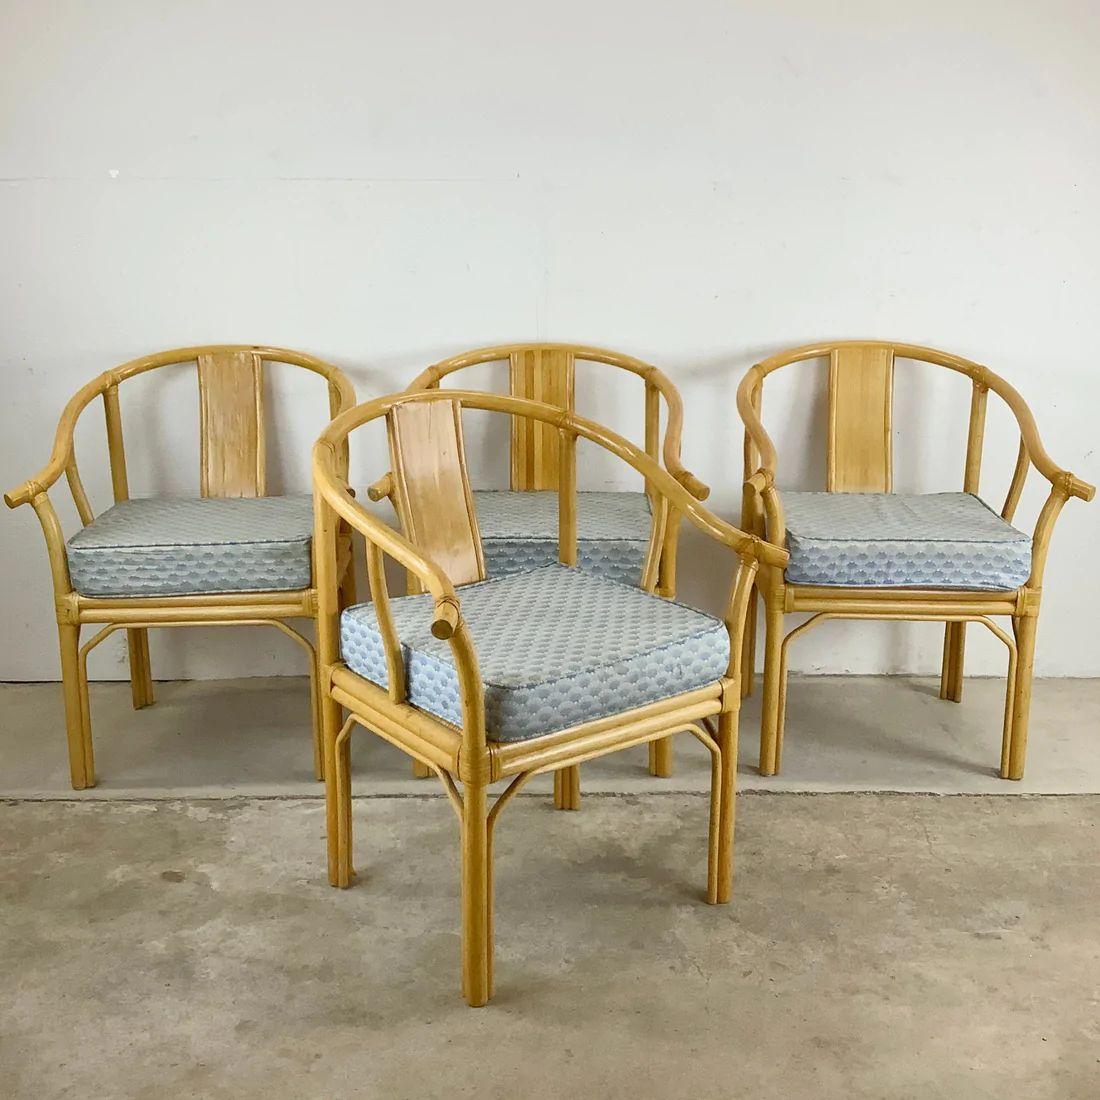 Dieses robuste und stilvolle Set aus vier modernen Sesseln im Vintage-Stil besteht aus Bambusrahmen mit Rattansitzen und einem Design im Chinoiserie-Stil. Bequeme Proportionen und einzigartiges Boho-Design machen sie perfekt für den regelmäßigen